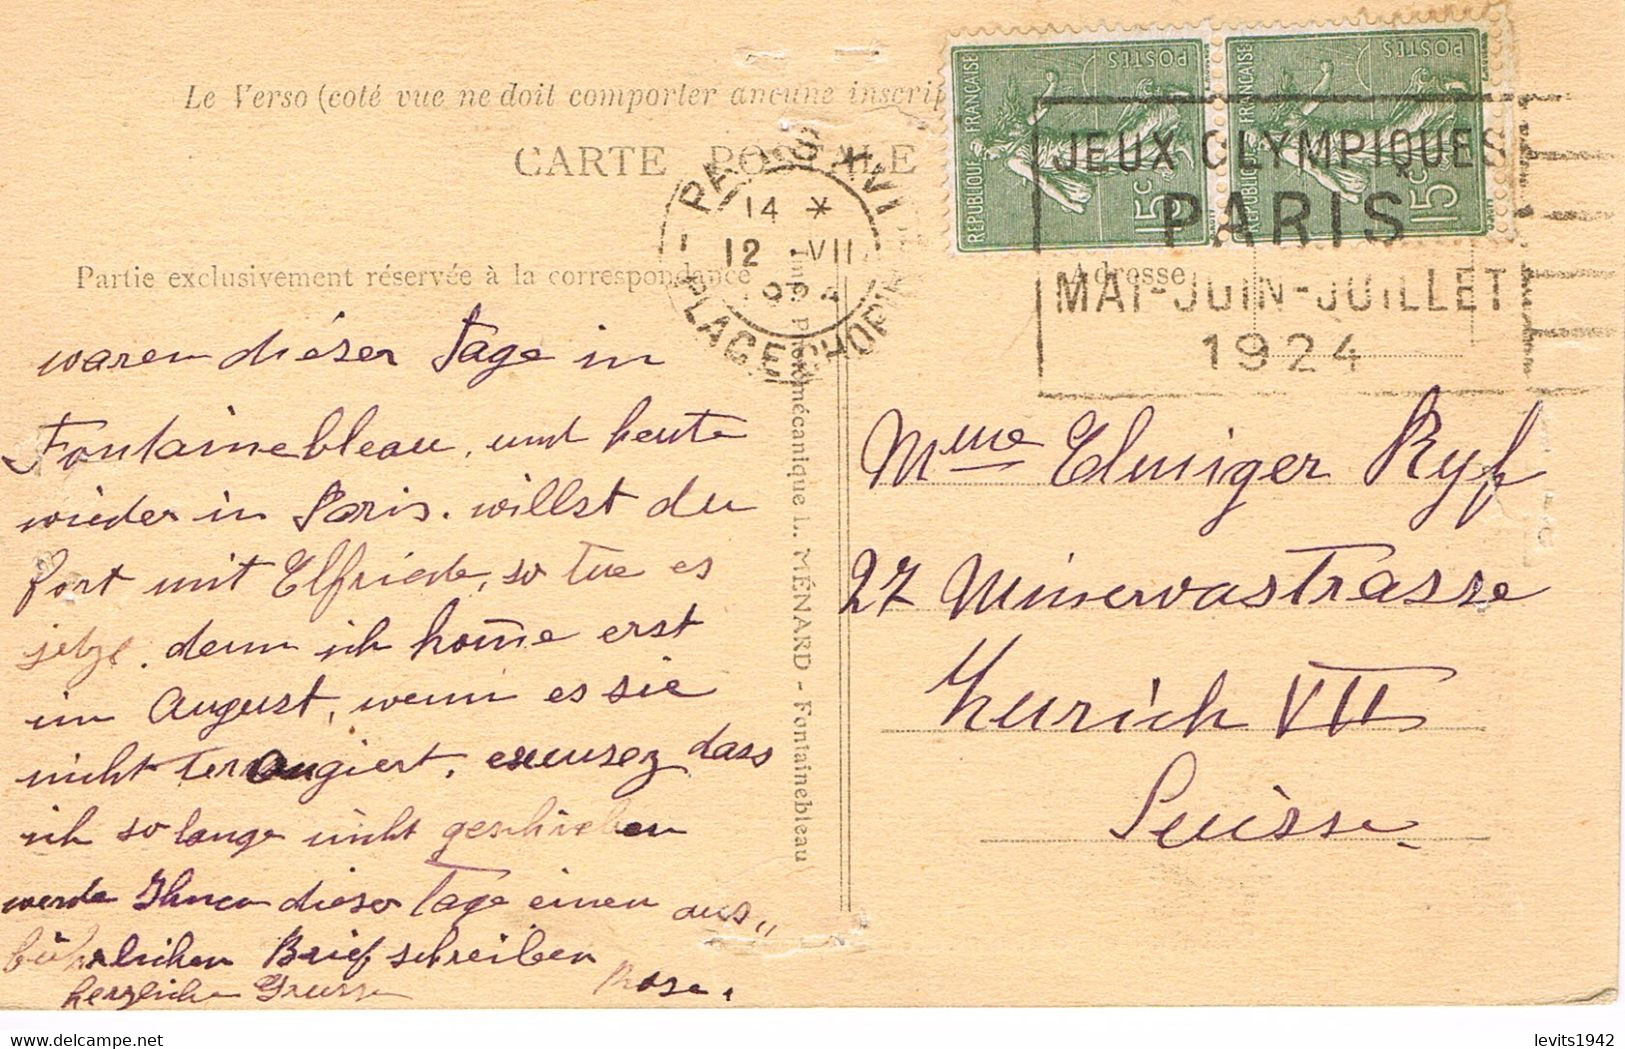 JEUX OLYMPIQUES 1924 -  MARQUE POSTALE - ESCRIME - PENTATHLON - ATHLETISME - LUTTE - JOUR DE COMPETITION - 12-07 - - Summer 1924: Paris